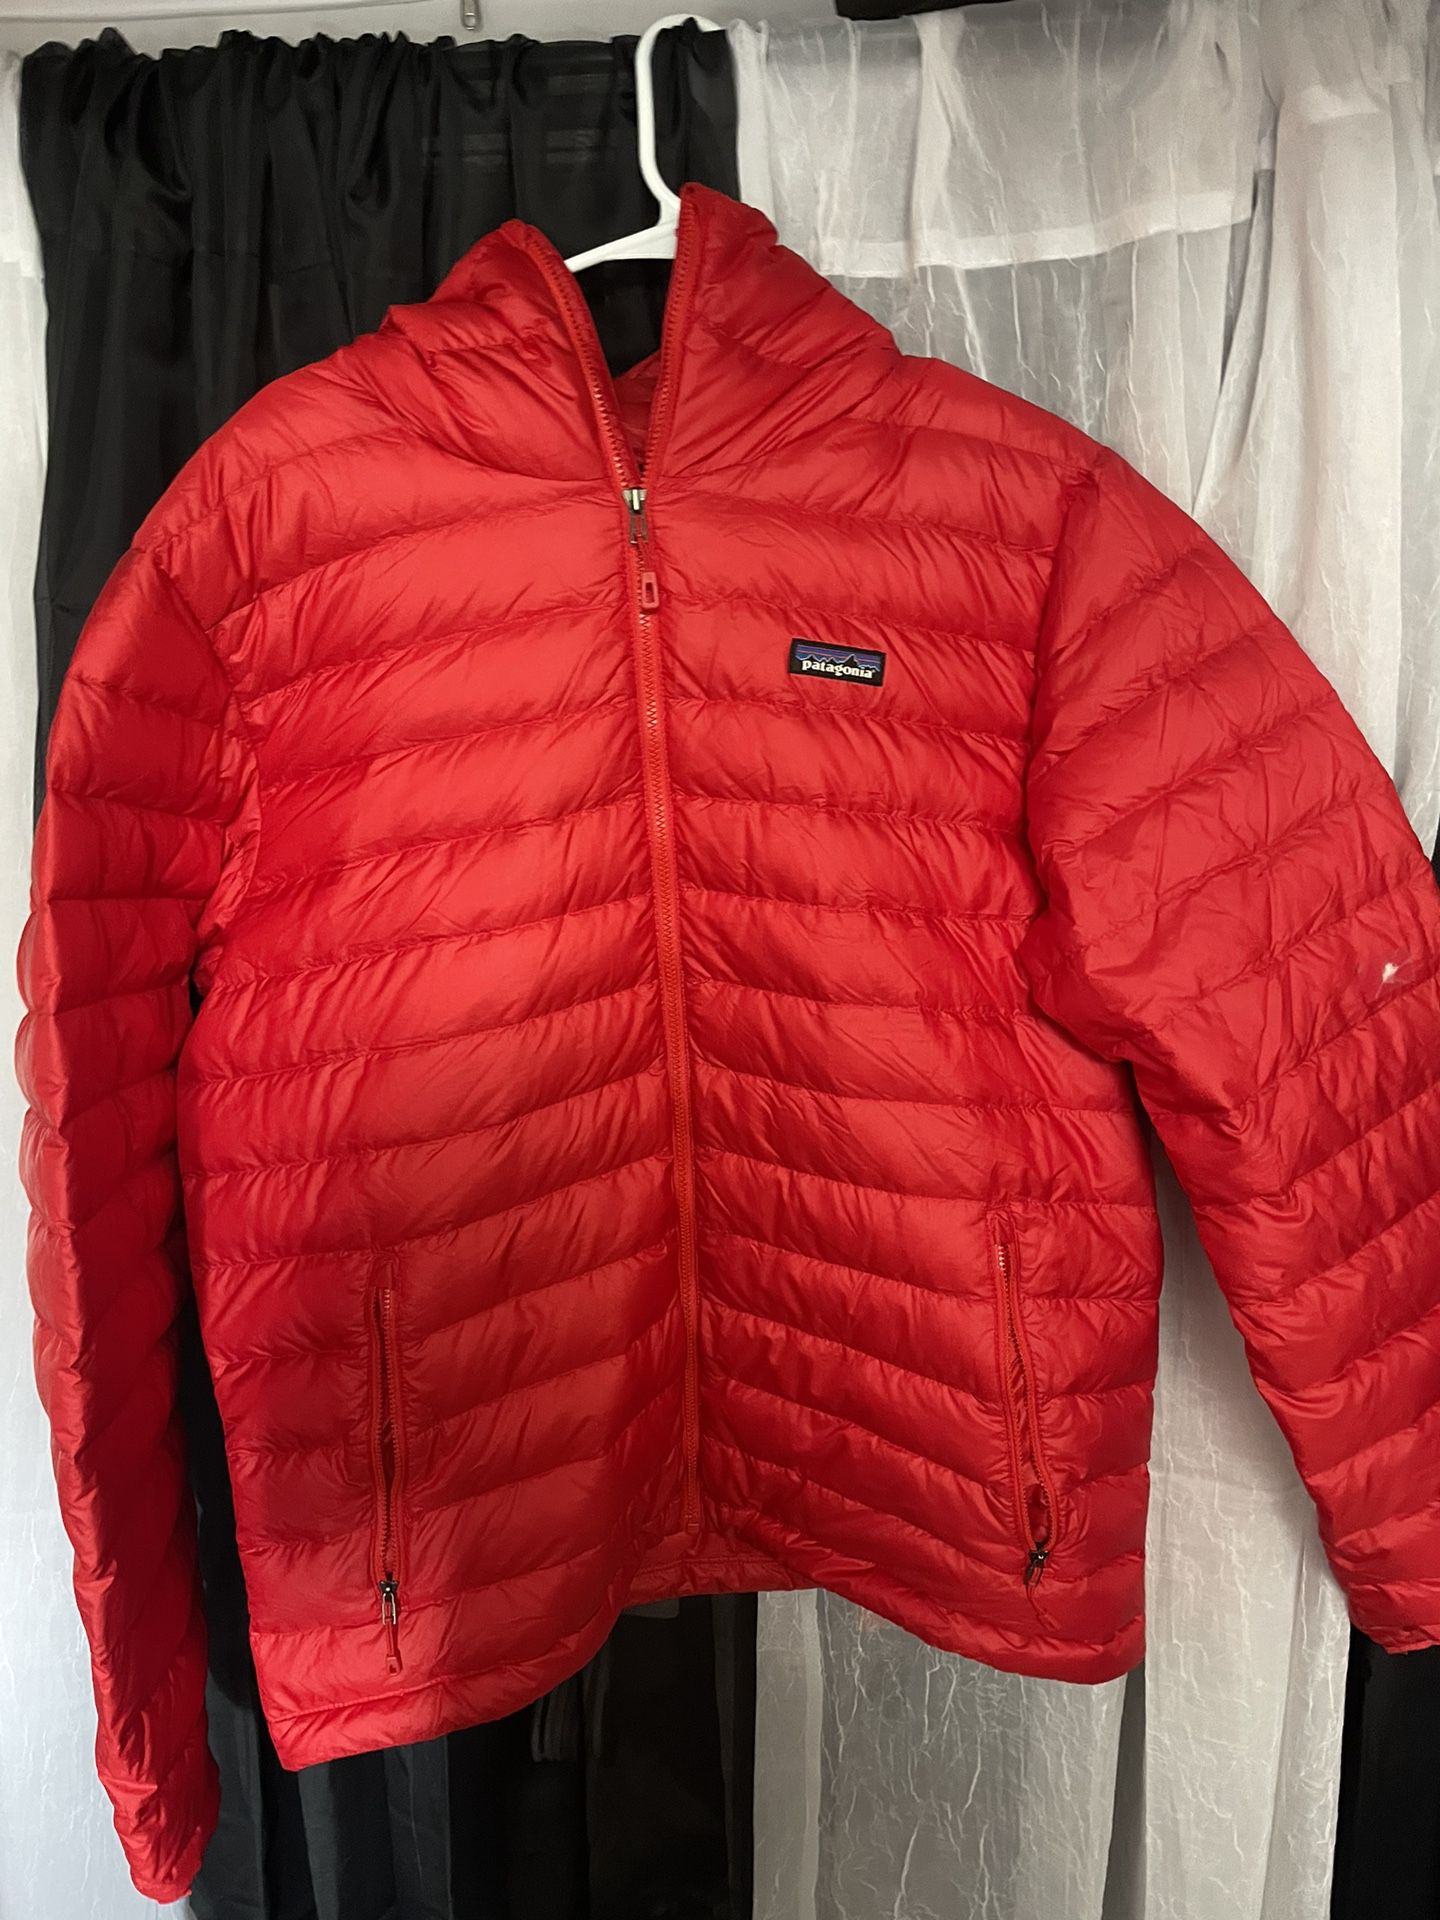 Large Red Patagonia Puffer Jacket